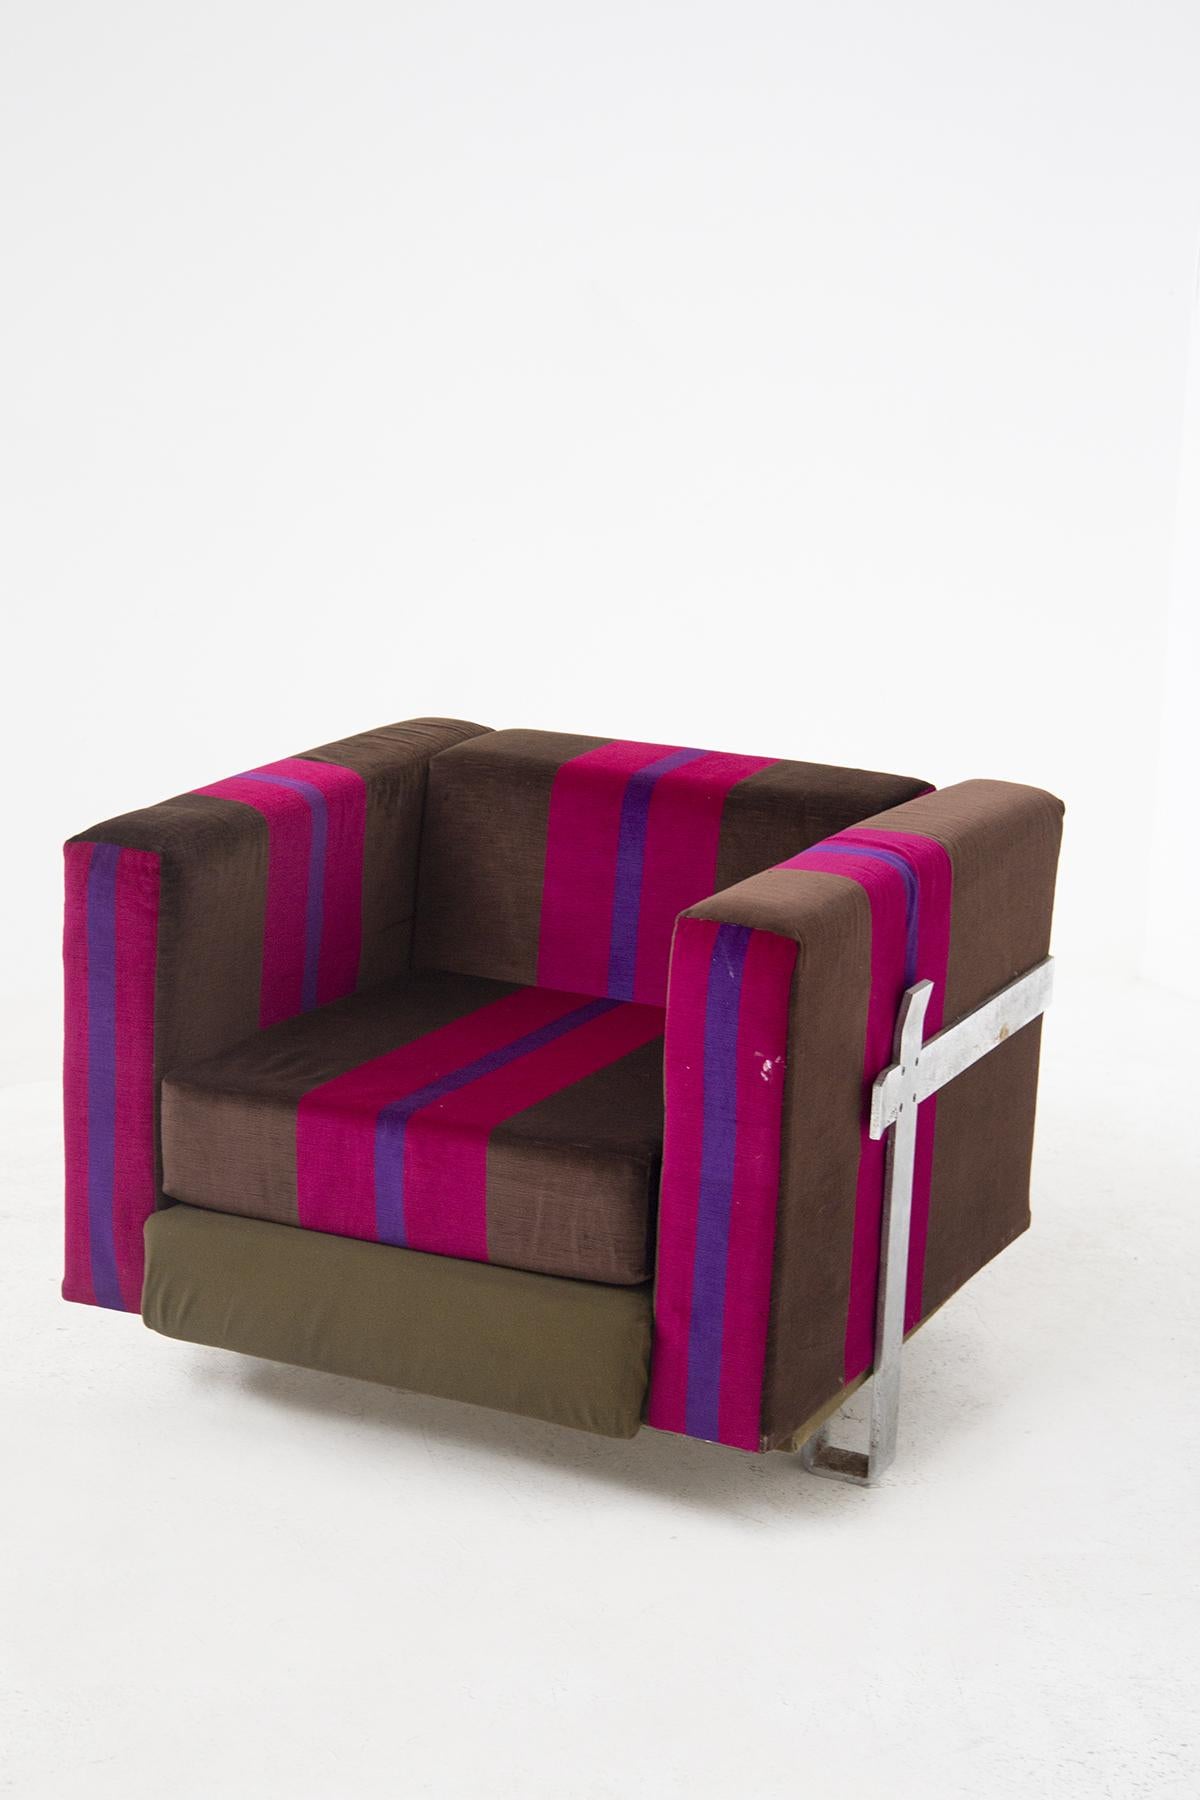 Prächtiger Satz von 2 Sesseln aus Stoff, entworfen von Luigi Caccia Dominioni für die renommierte Manufaktur Azucena Italia.
Die Vintage-Sessel sind aus braunem, fuchsiafarbenem und lila gestreiftem Stoff gefertigt, der einen sehr bunten